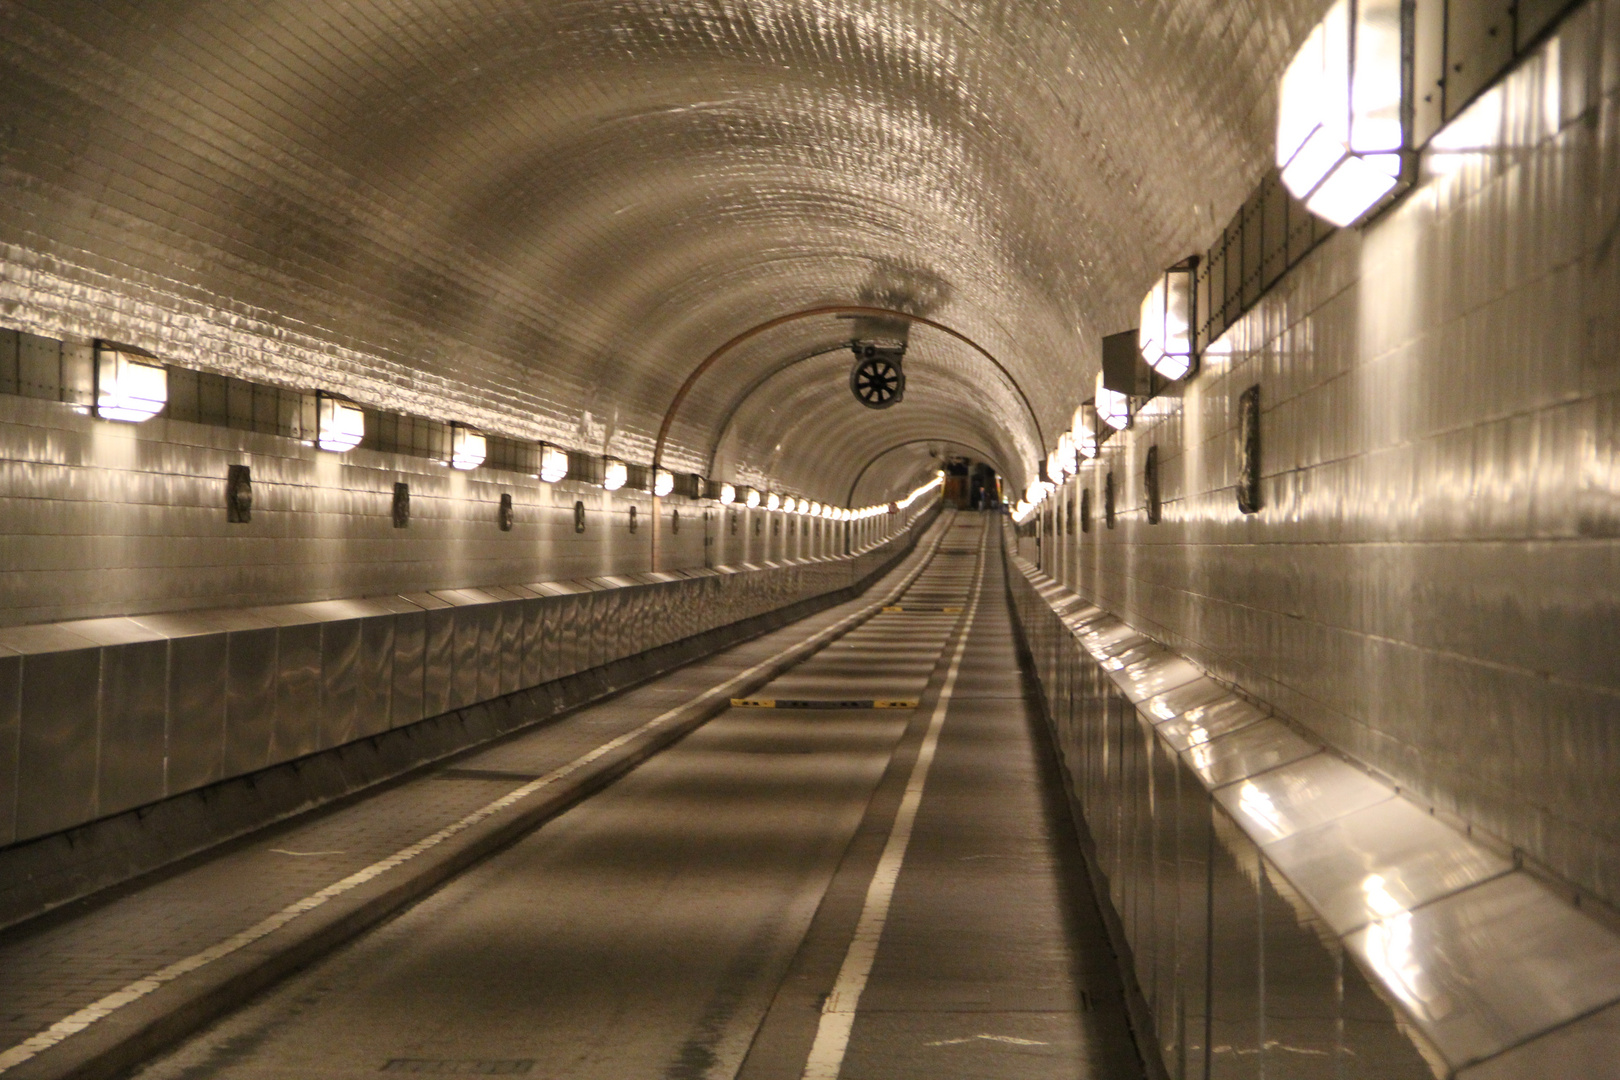 alter elb tunnel